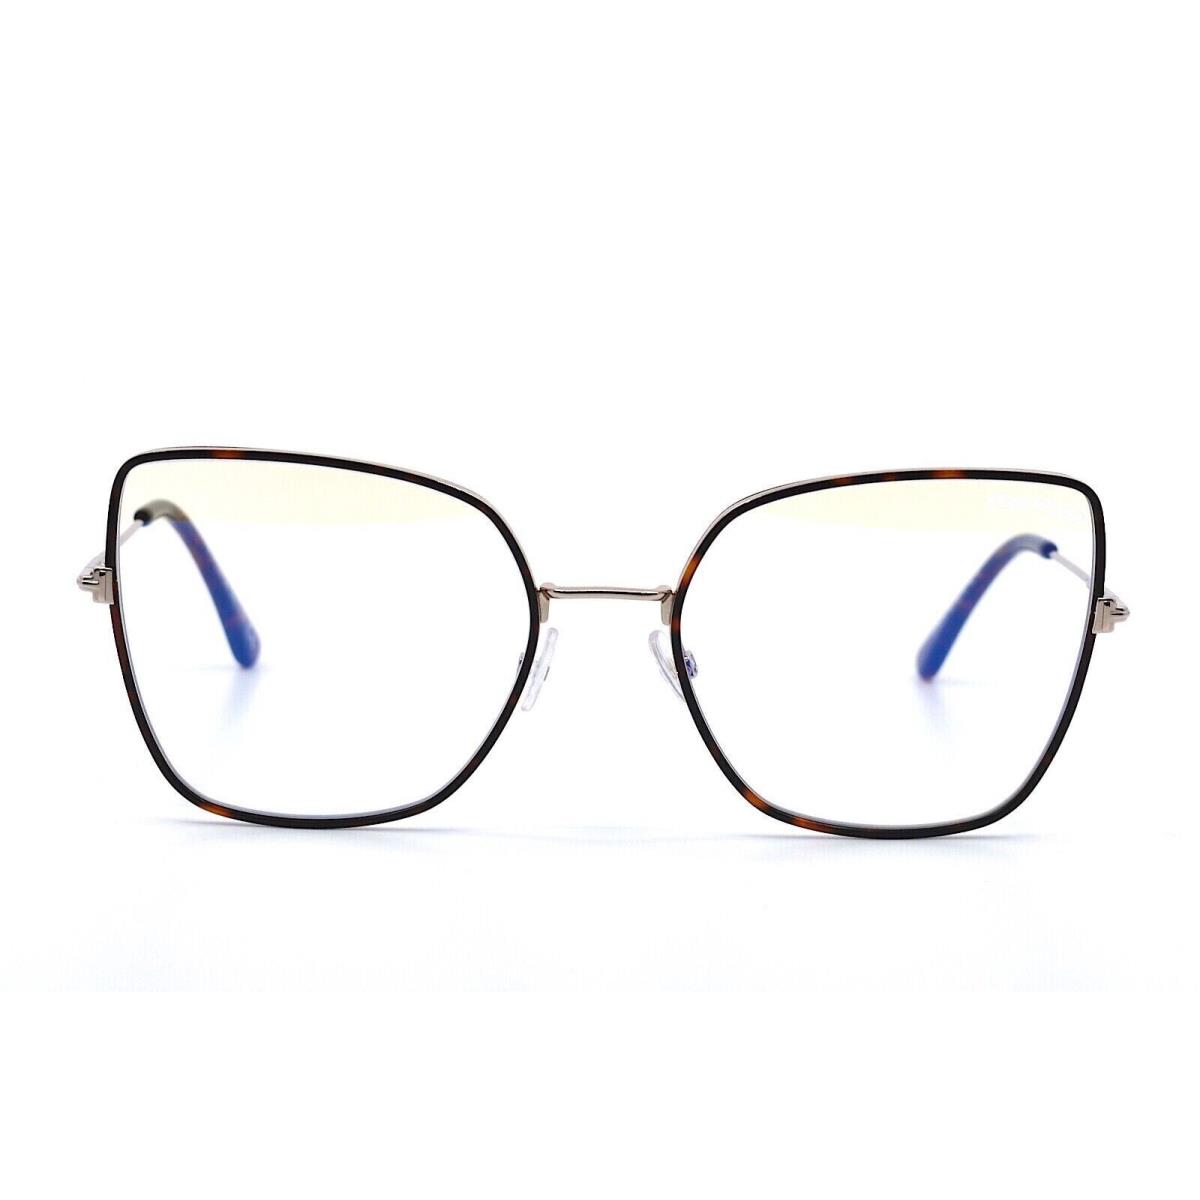 Tom Ford eyeglasses  - Havana-Gold Frame